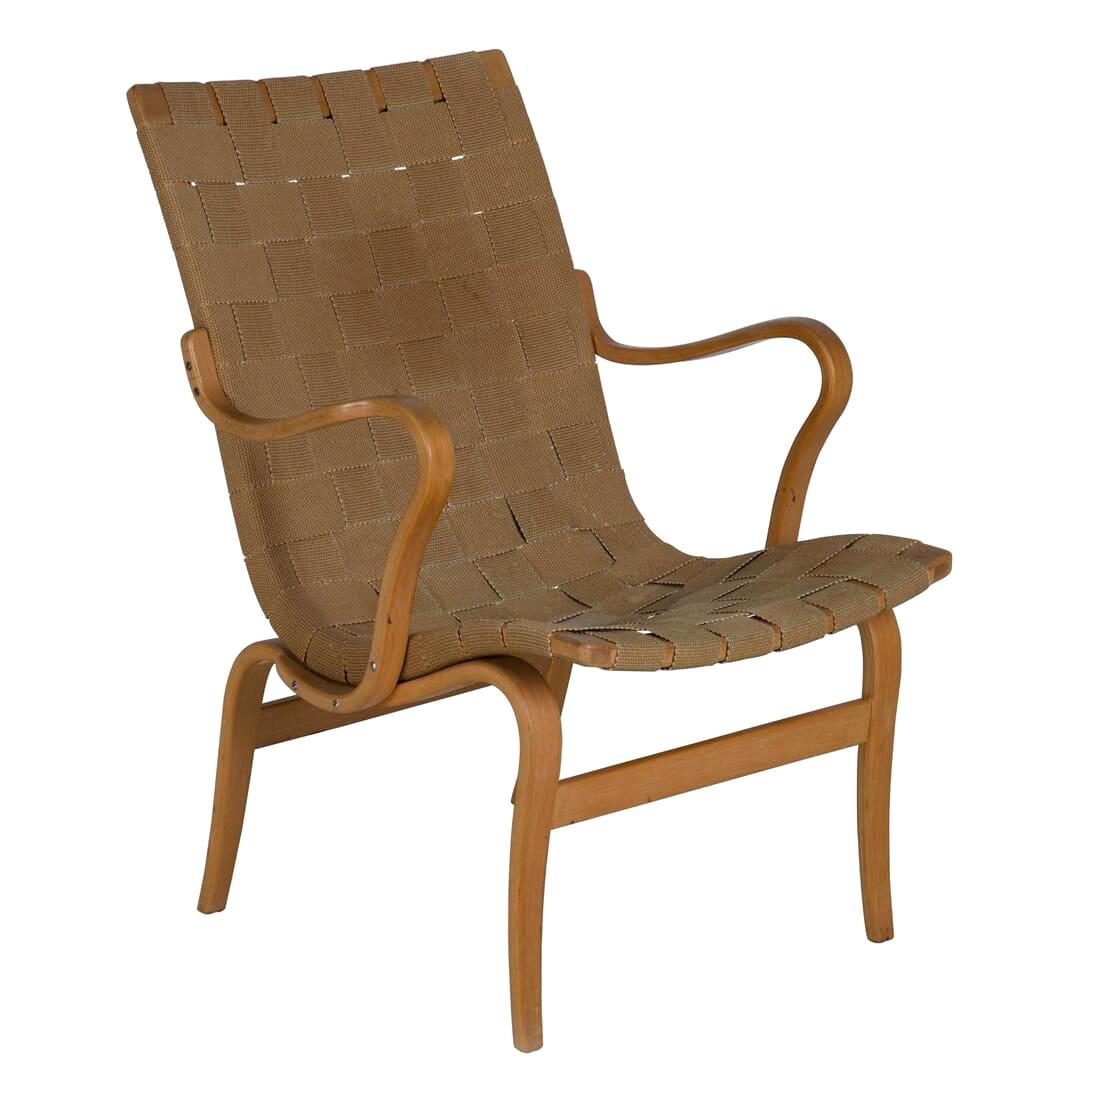 'Eva' Chair by Bruno Mathsson